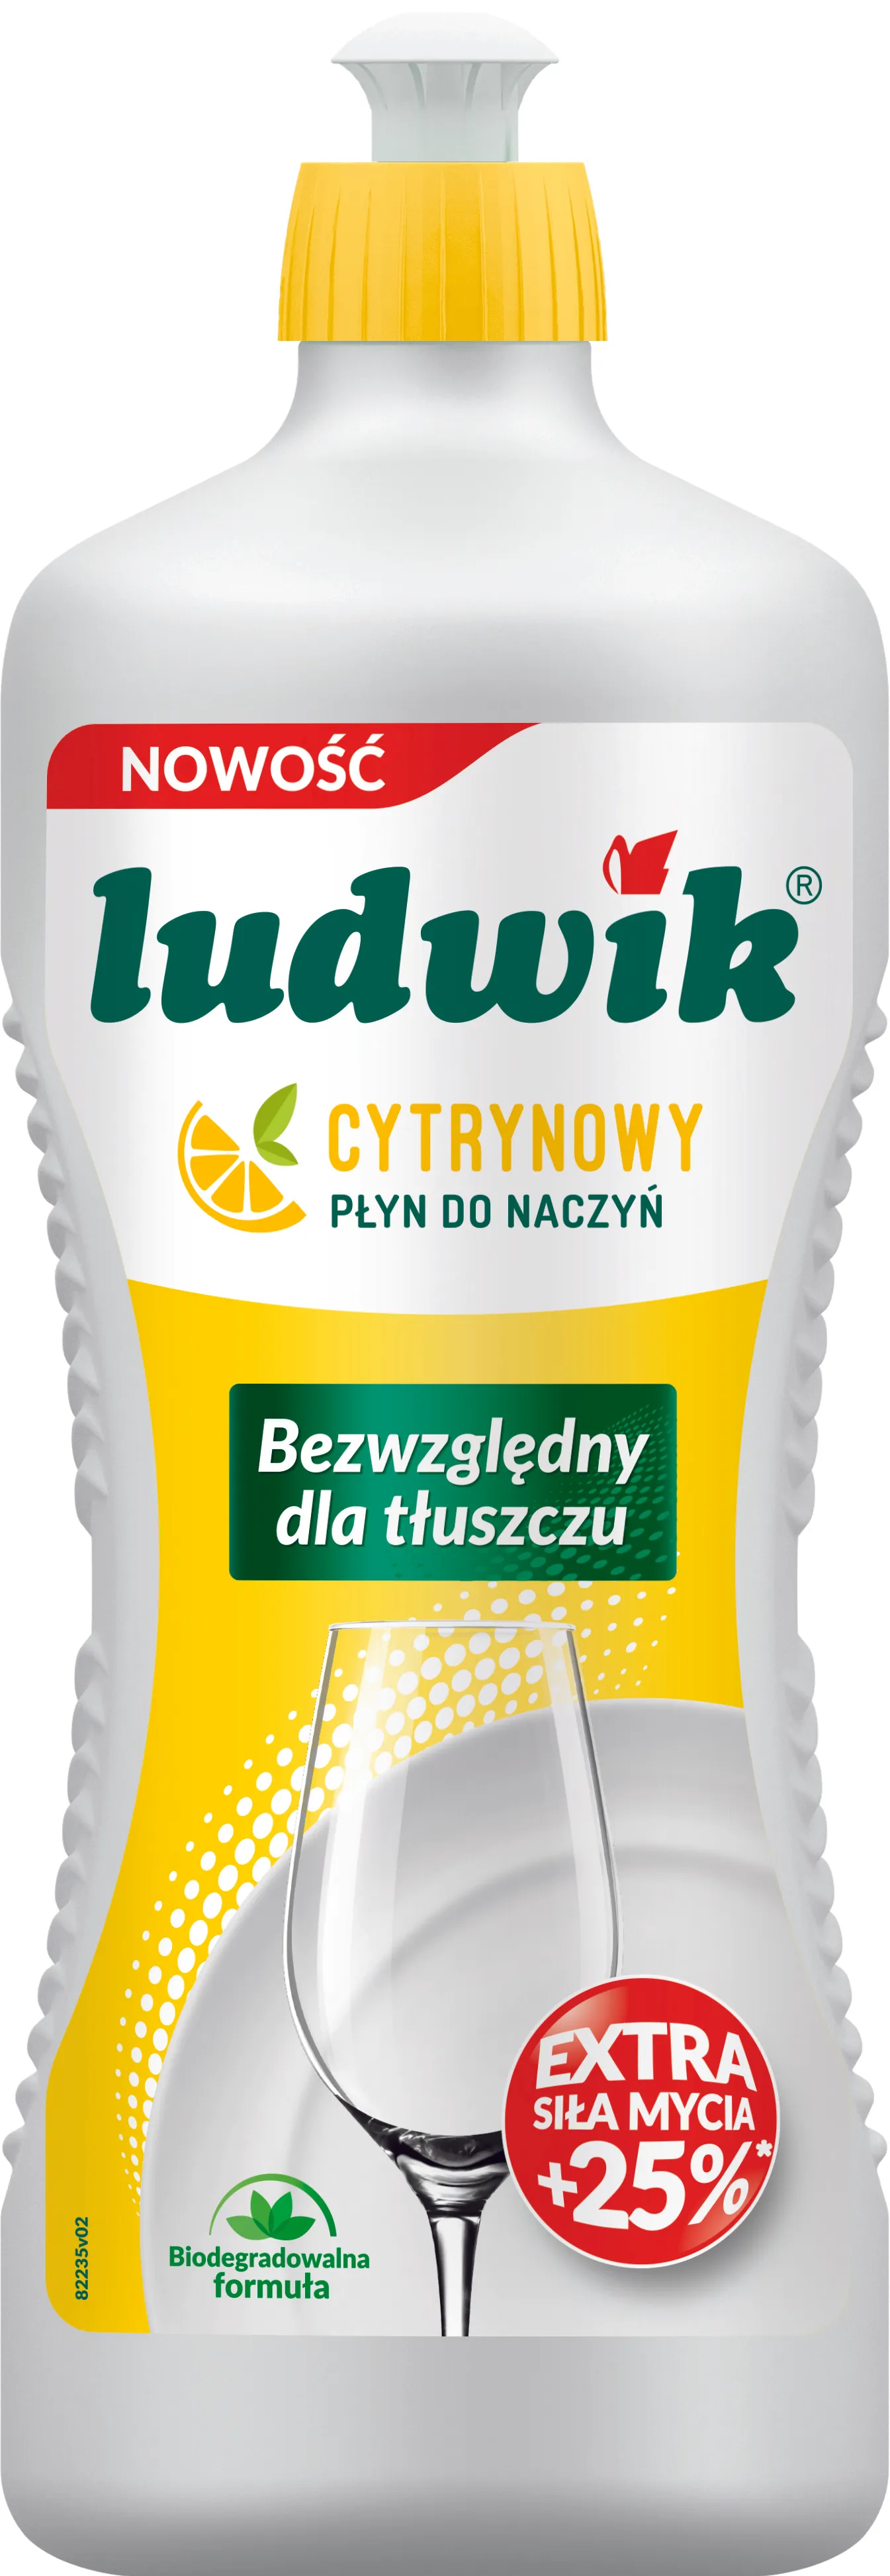 Ludwik Płyn do mycia naczyń cytrynowy, 900 g